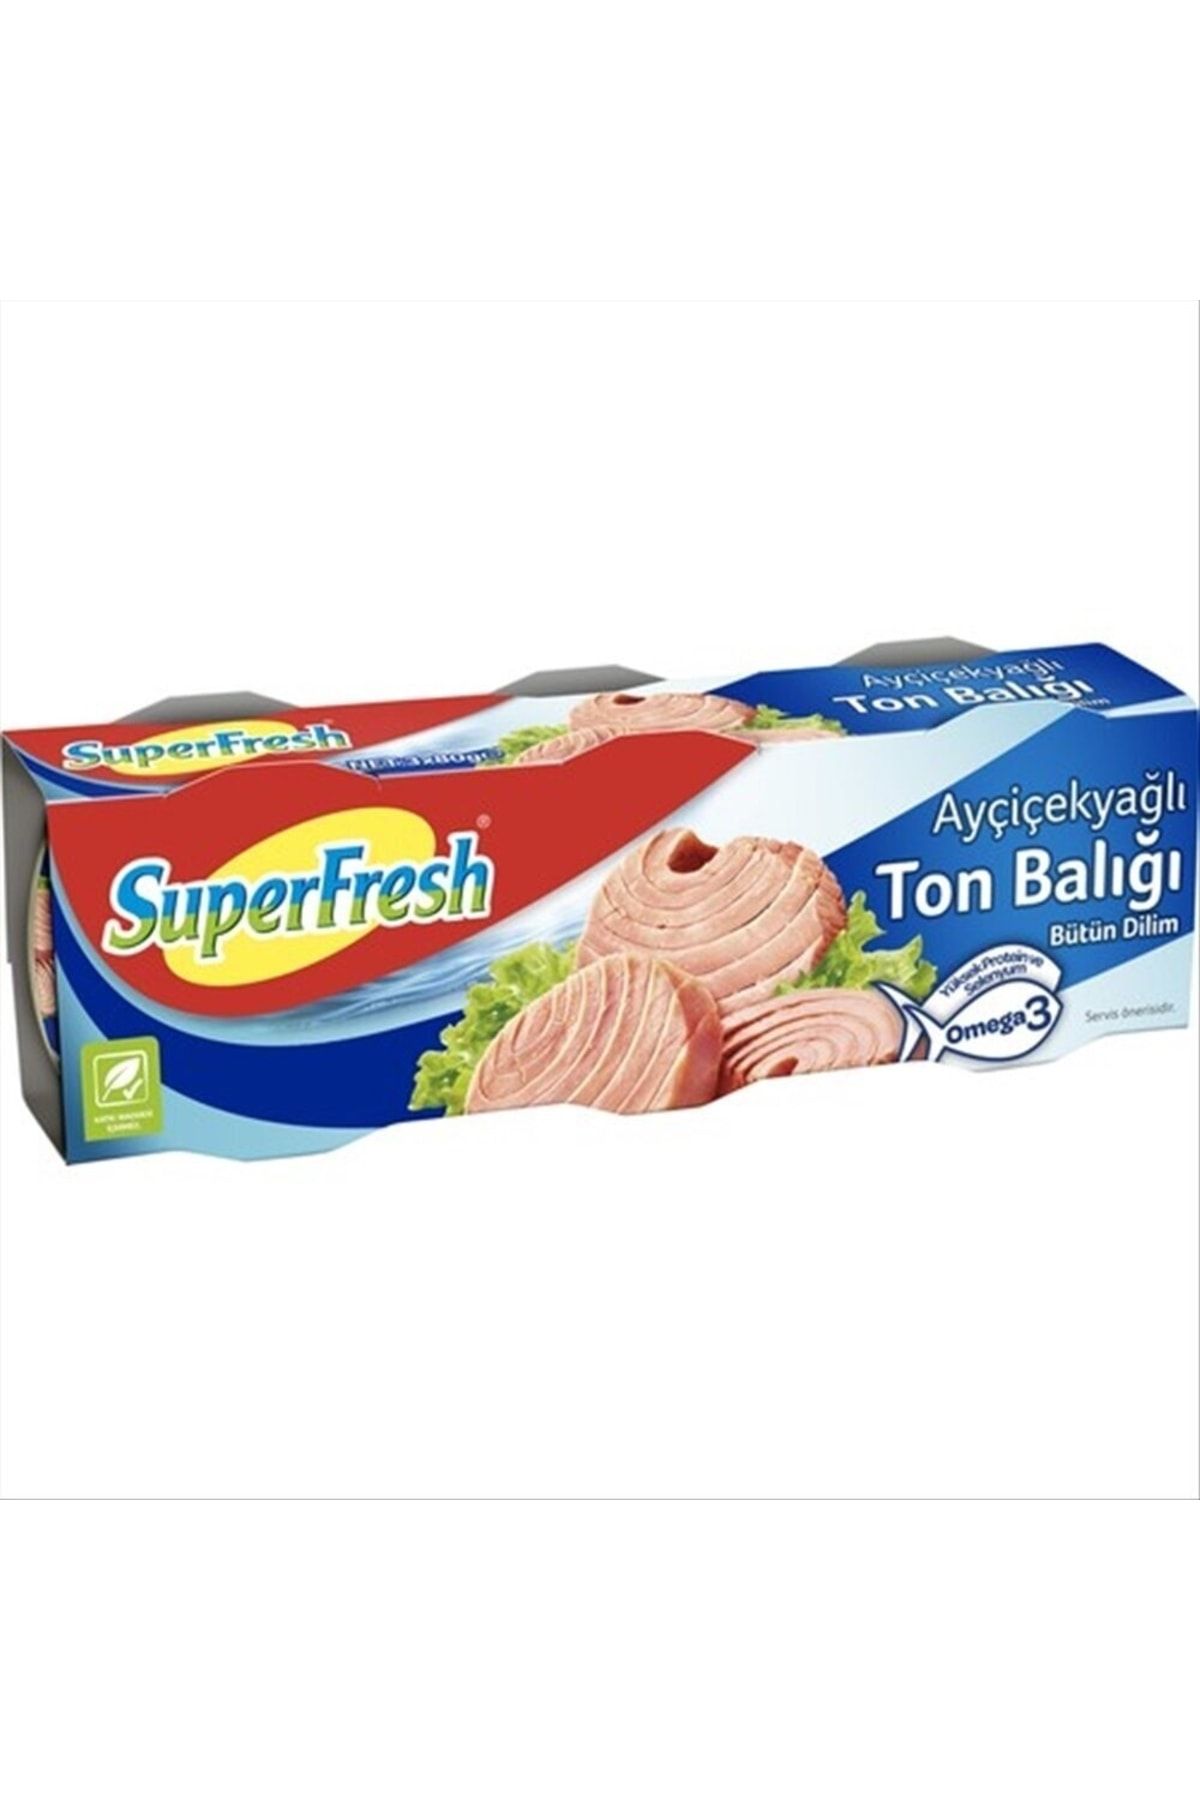 SuperFresh Ton Balığı Ayçiçek Yağlı 3x75 gr